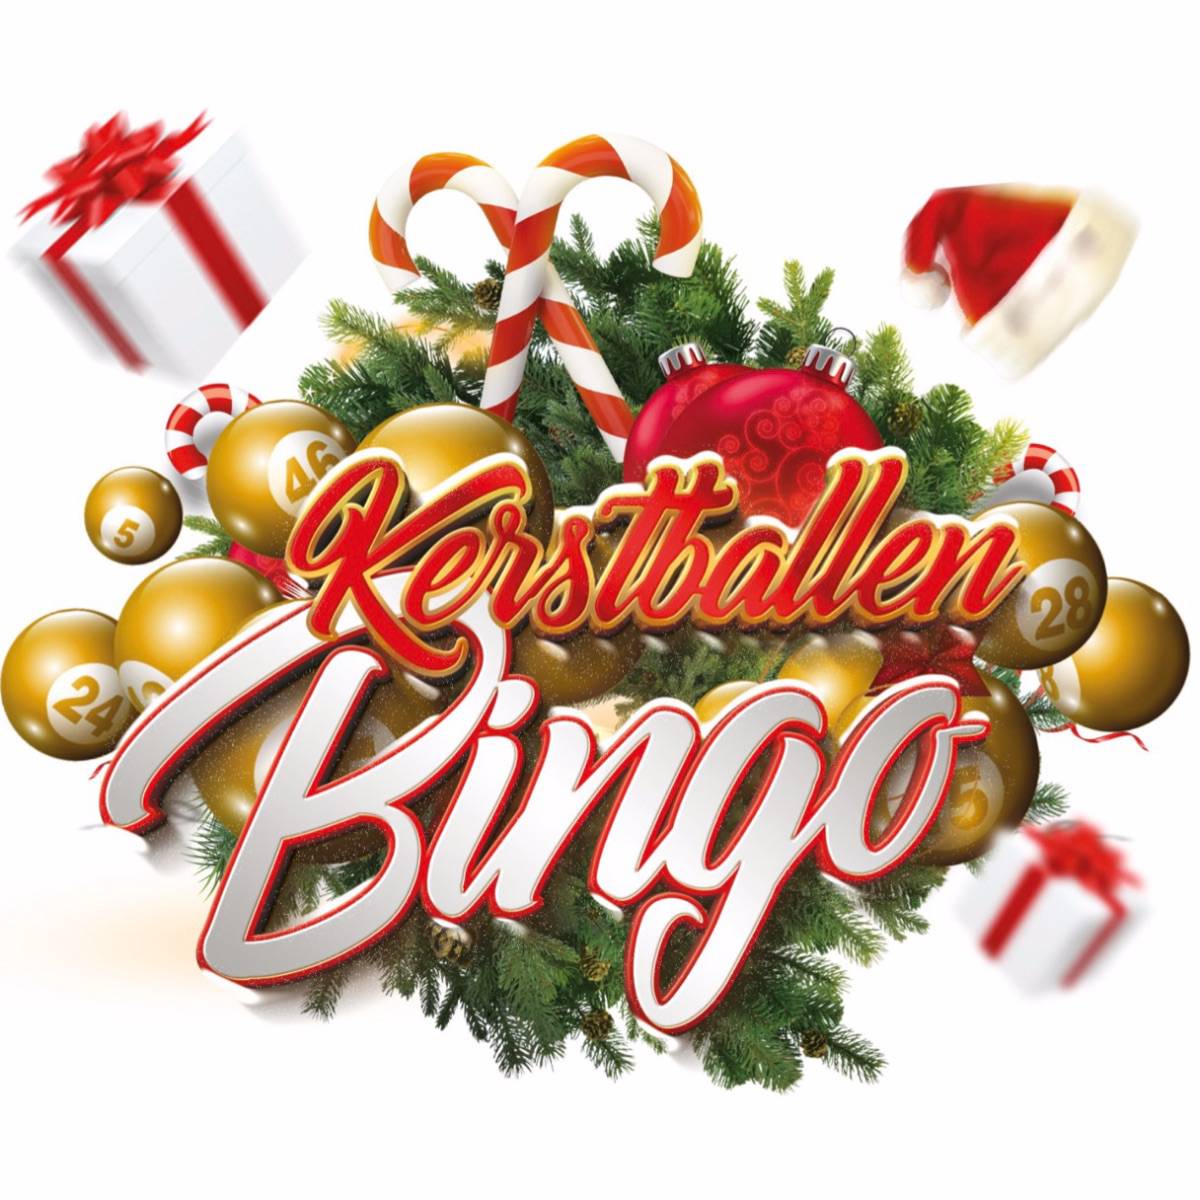 Kerstballen bingo